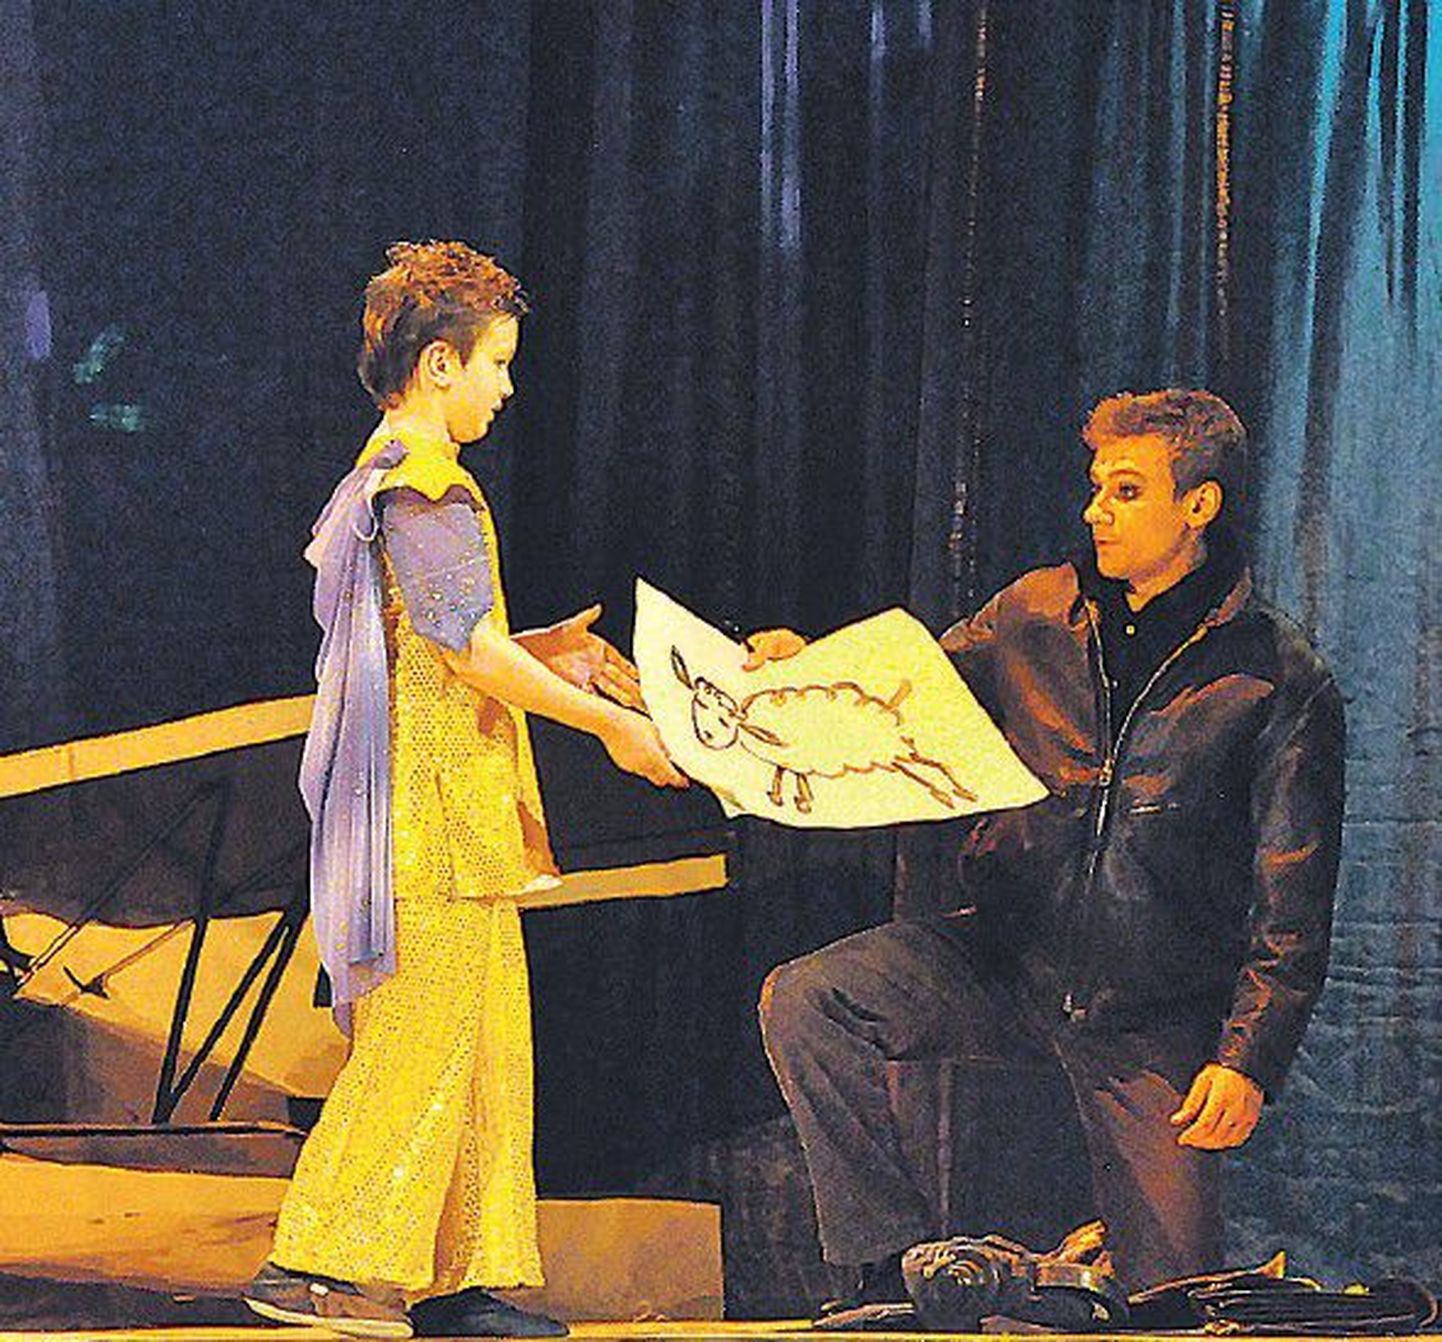 Премьера спектакля «Маленький принц», который имел большой успех у публики, состоялась минувшей весной. На фото: сцена из спектакля.